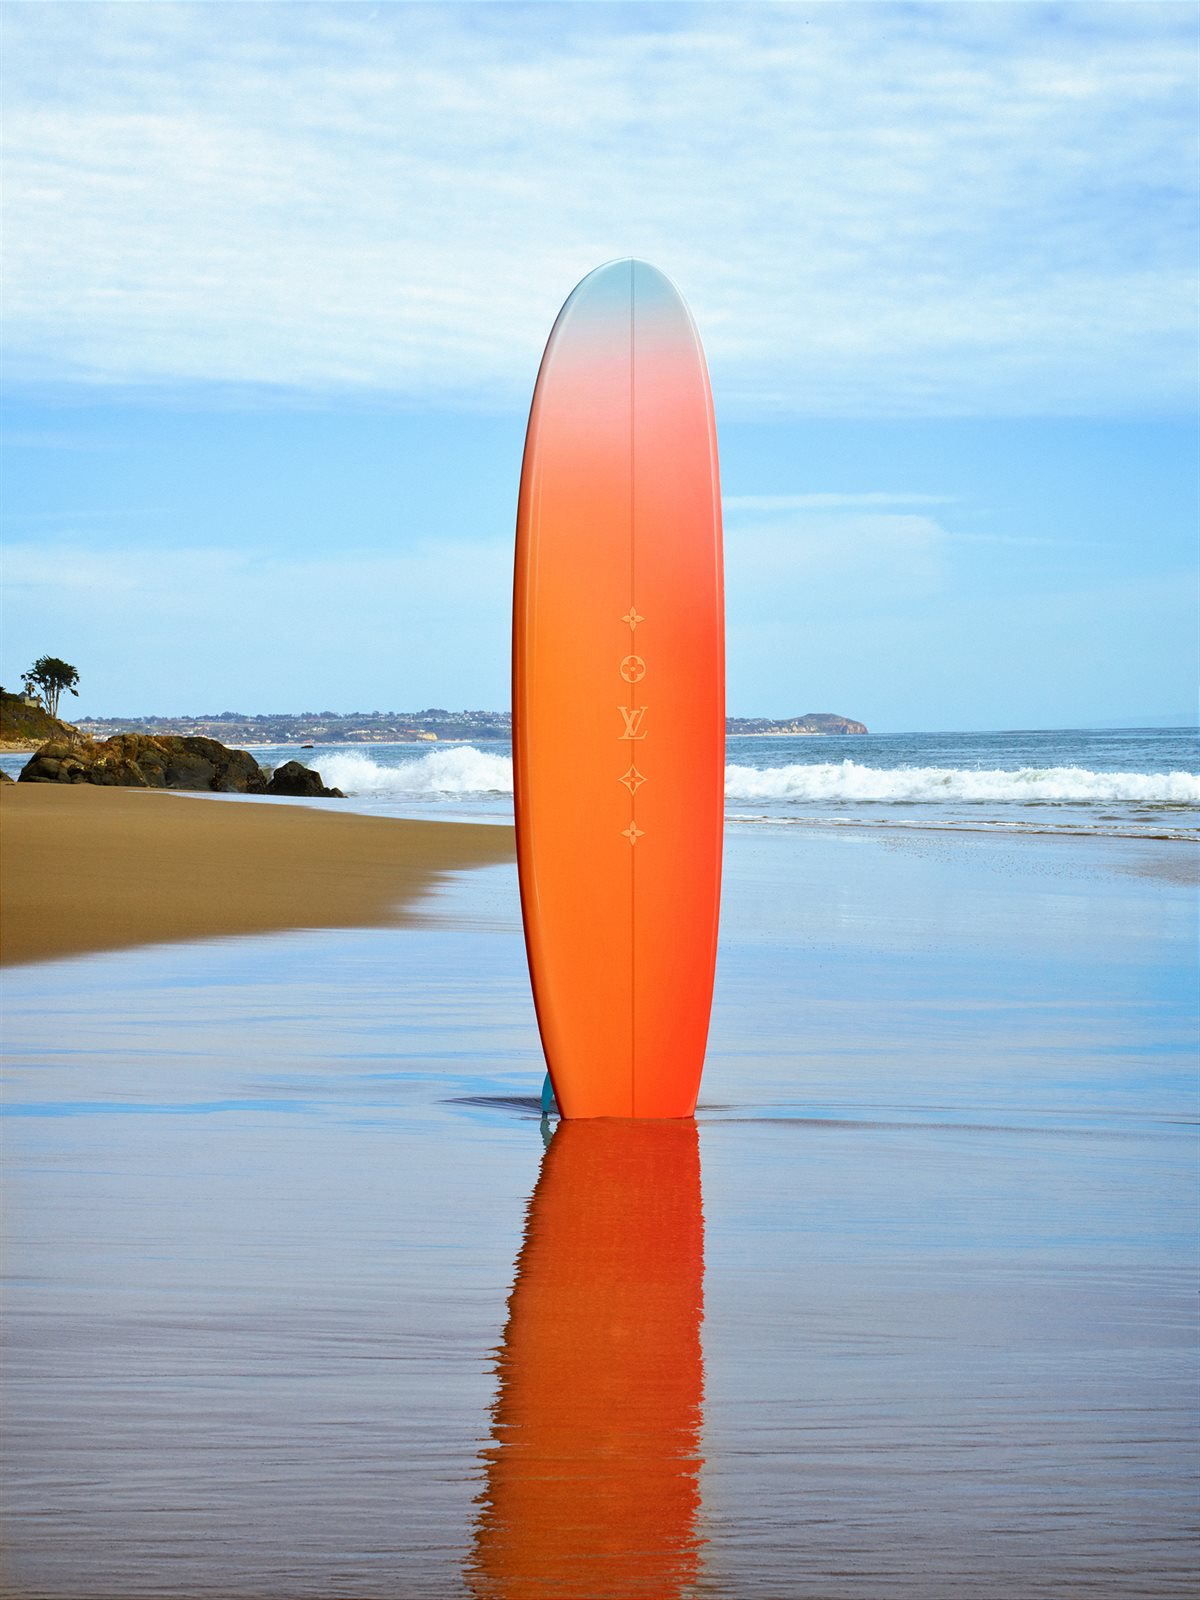 ON THE BEACH_SURFBOARD 01